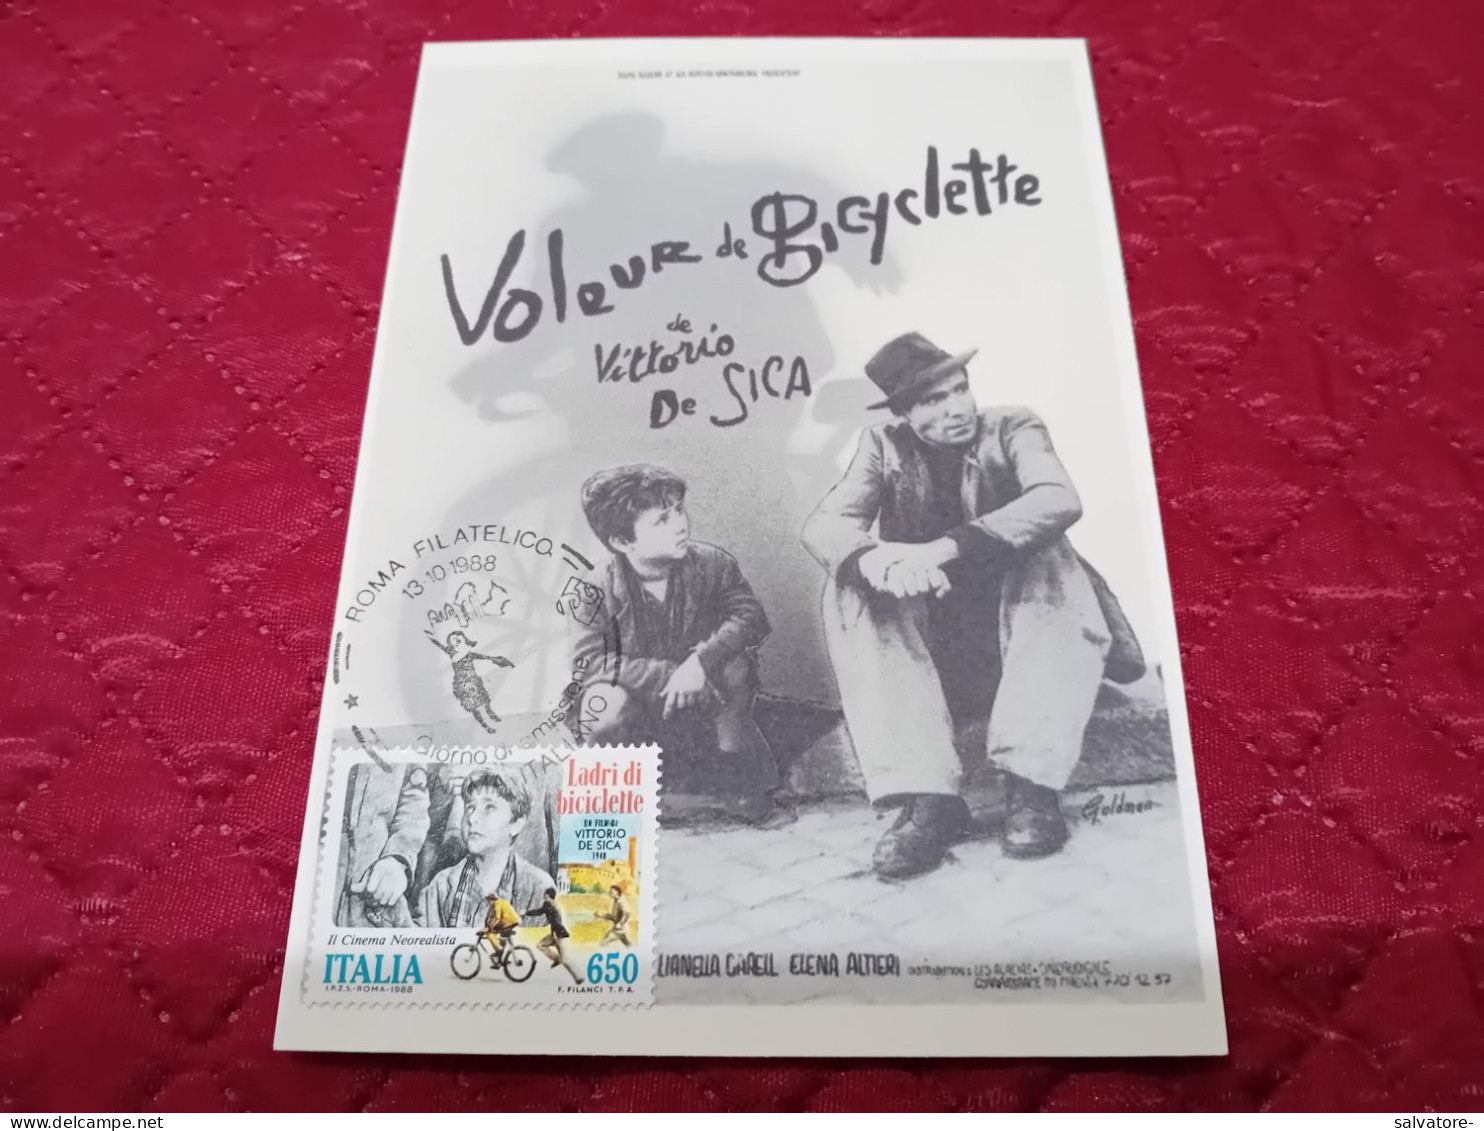 CARTOLINA VOLEUR DE BICICLETTE 1988 - Publicité Cinématographique